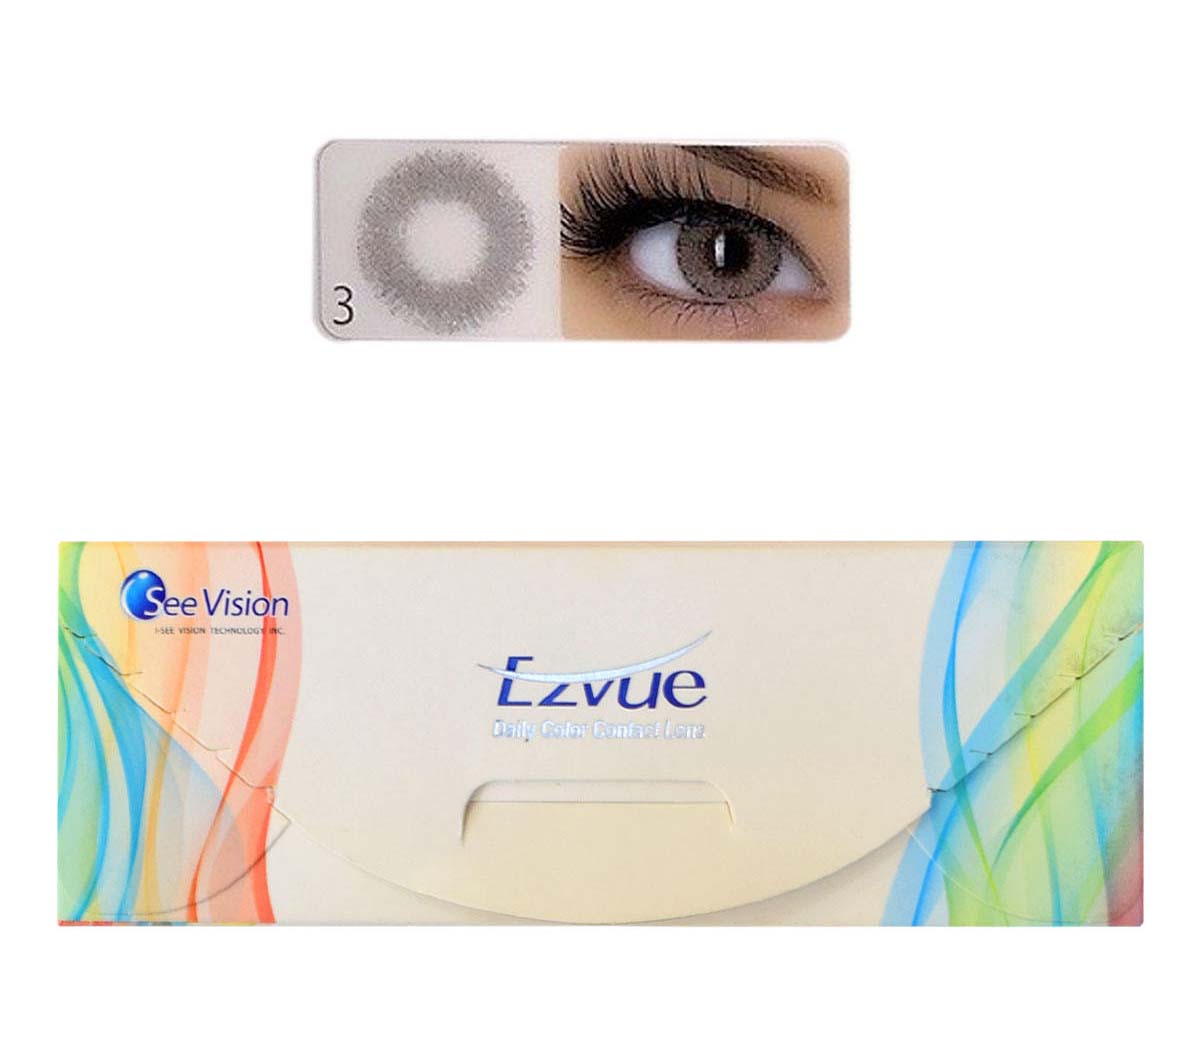 لنز چشم آی سی ویژن کد 3